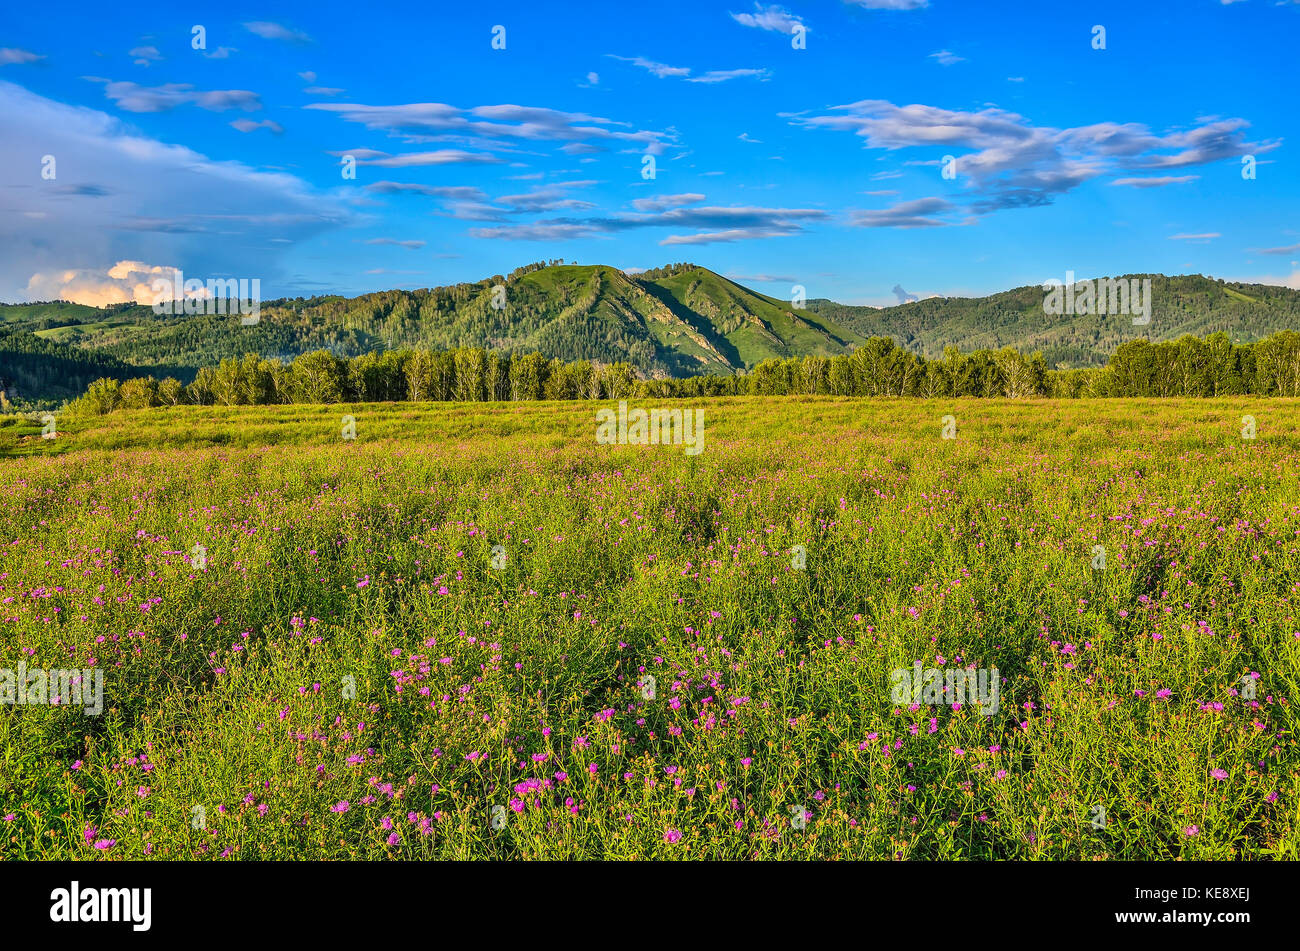 Soleil de montagne pittoresque paysage de collines, de Green Mountain meadow floraison lilas avec barbeaux sauvages et beaux ciel nuageux à Bright d'été Banque D'Images